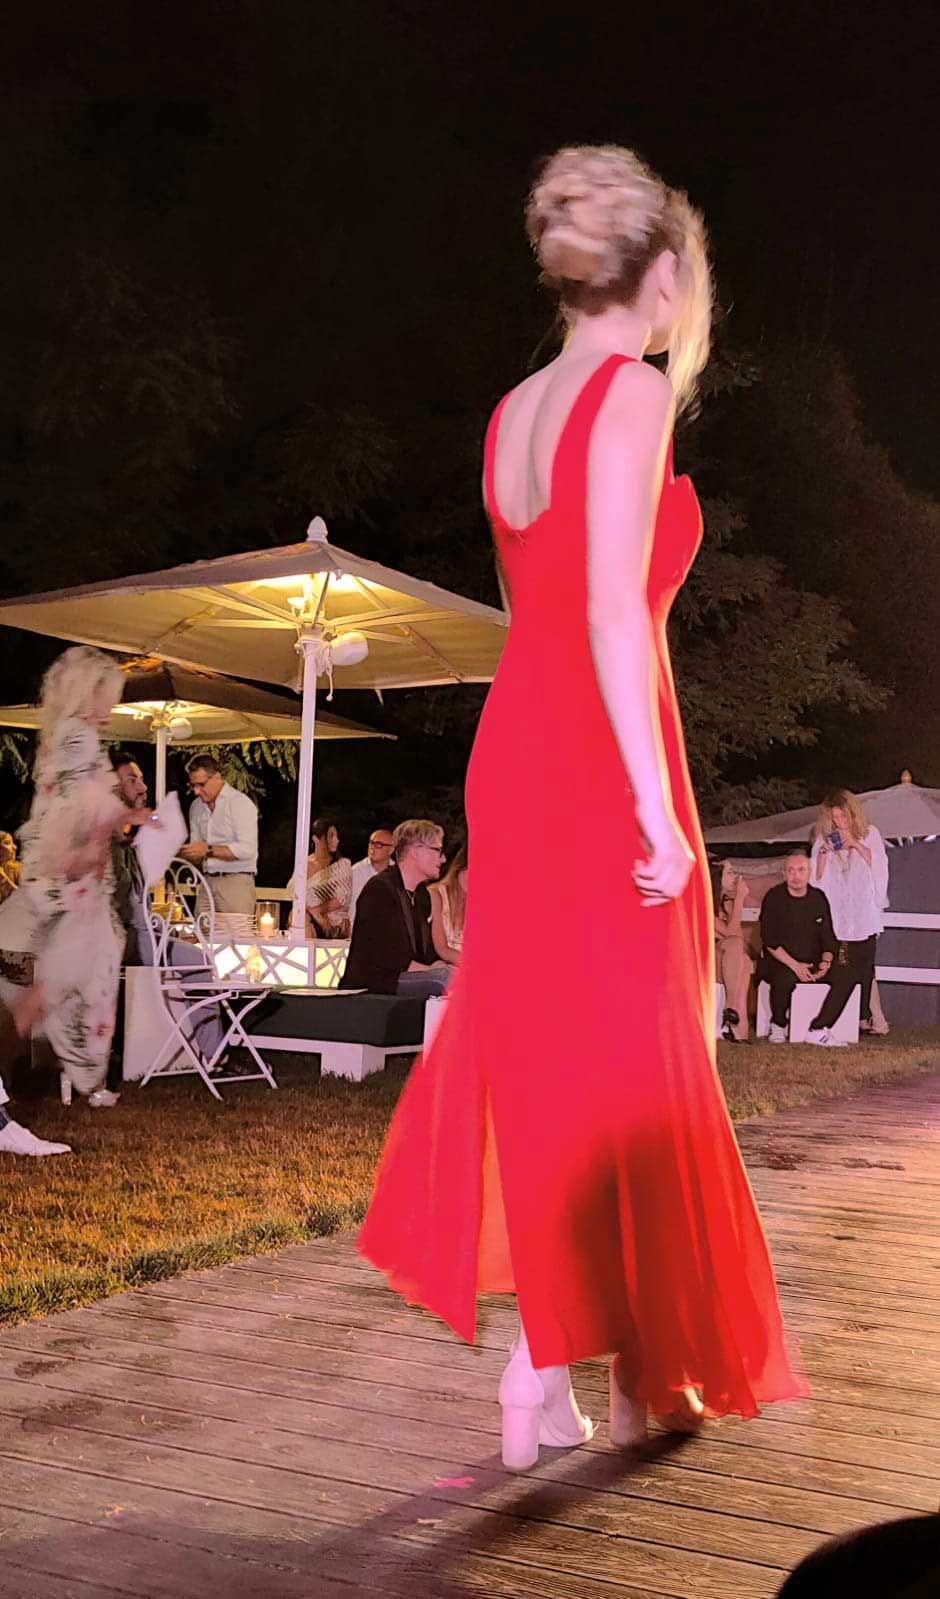 World Top Model Rome fashion show event in Roman location of Profumo spazio sensoriale. Designer Eleonora Giamberduca presents women’s formal dresses